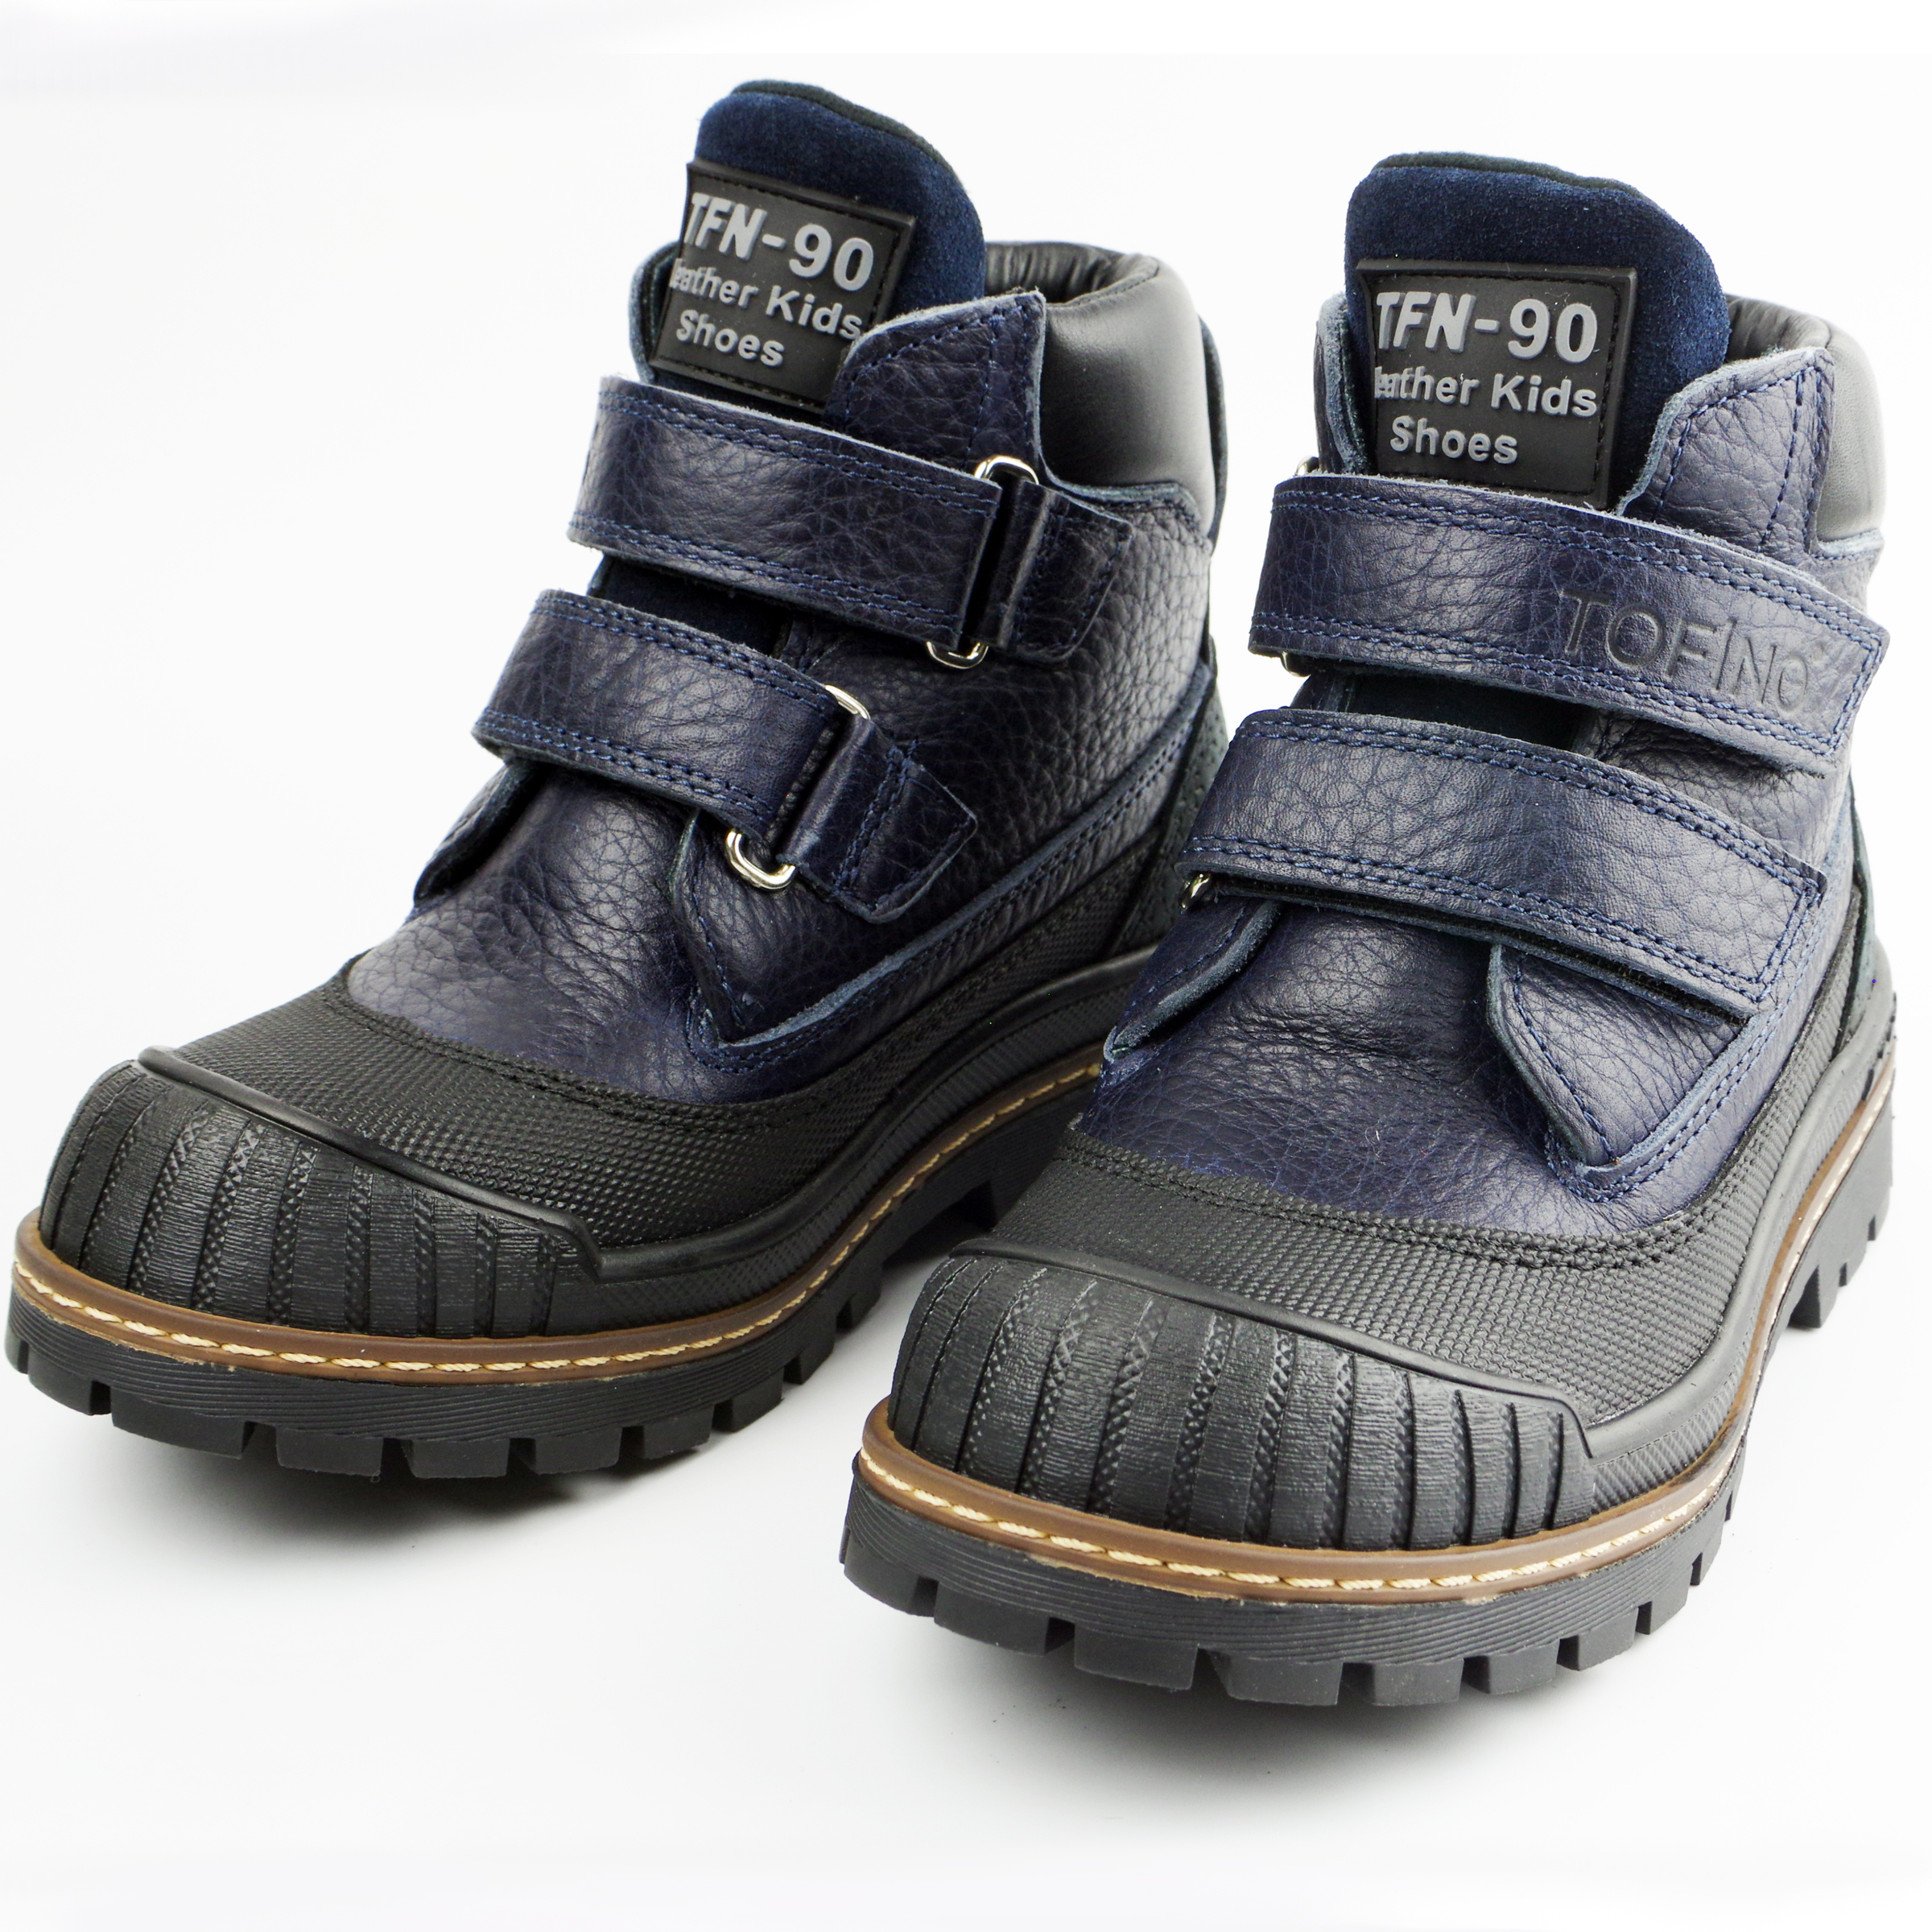 Ботинки детские (2140) материал Нубук, цвет темно-синий  для мальчиков 31-36 размеры – Sole Kids. Фото 3